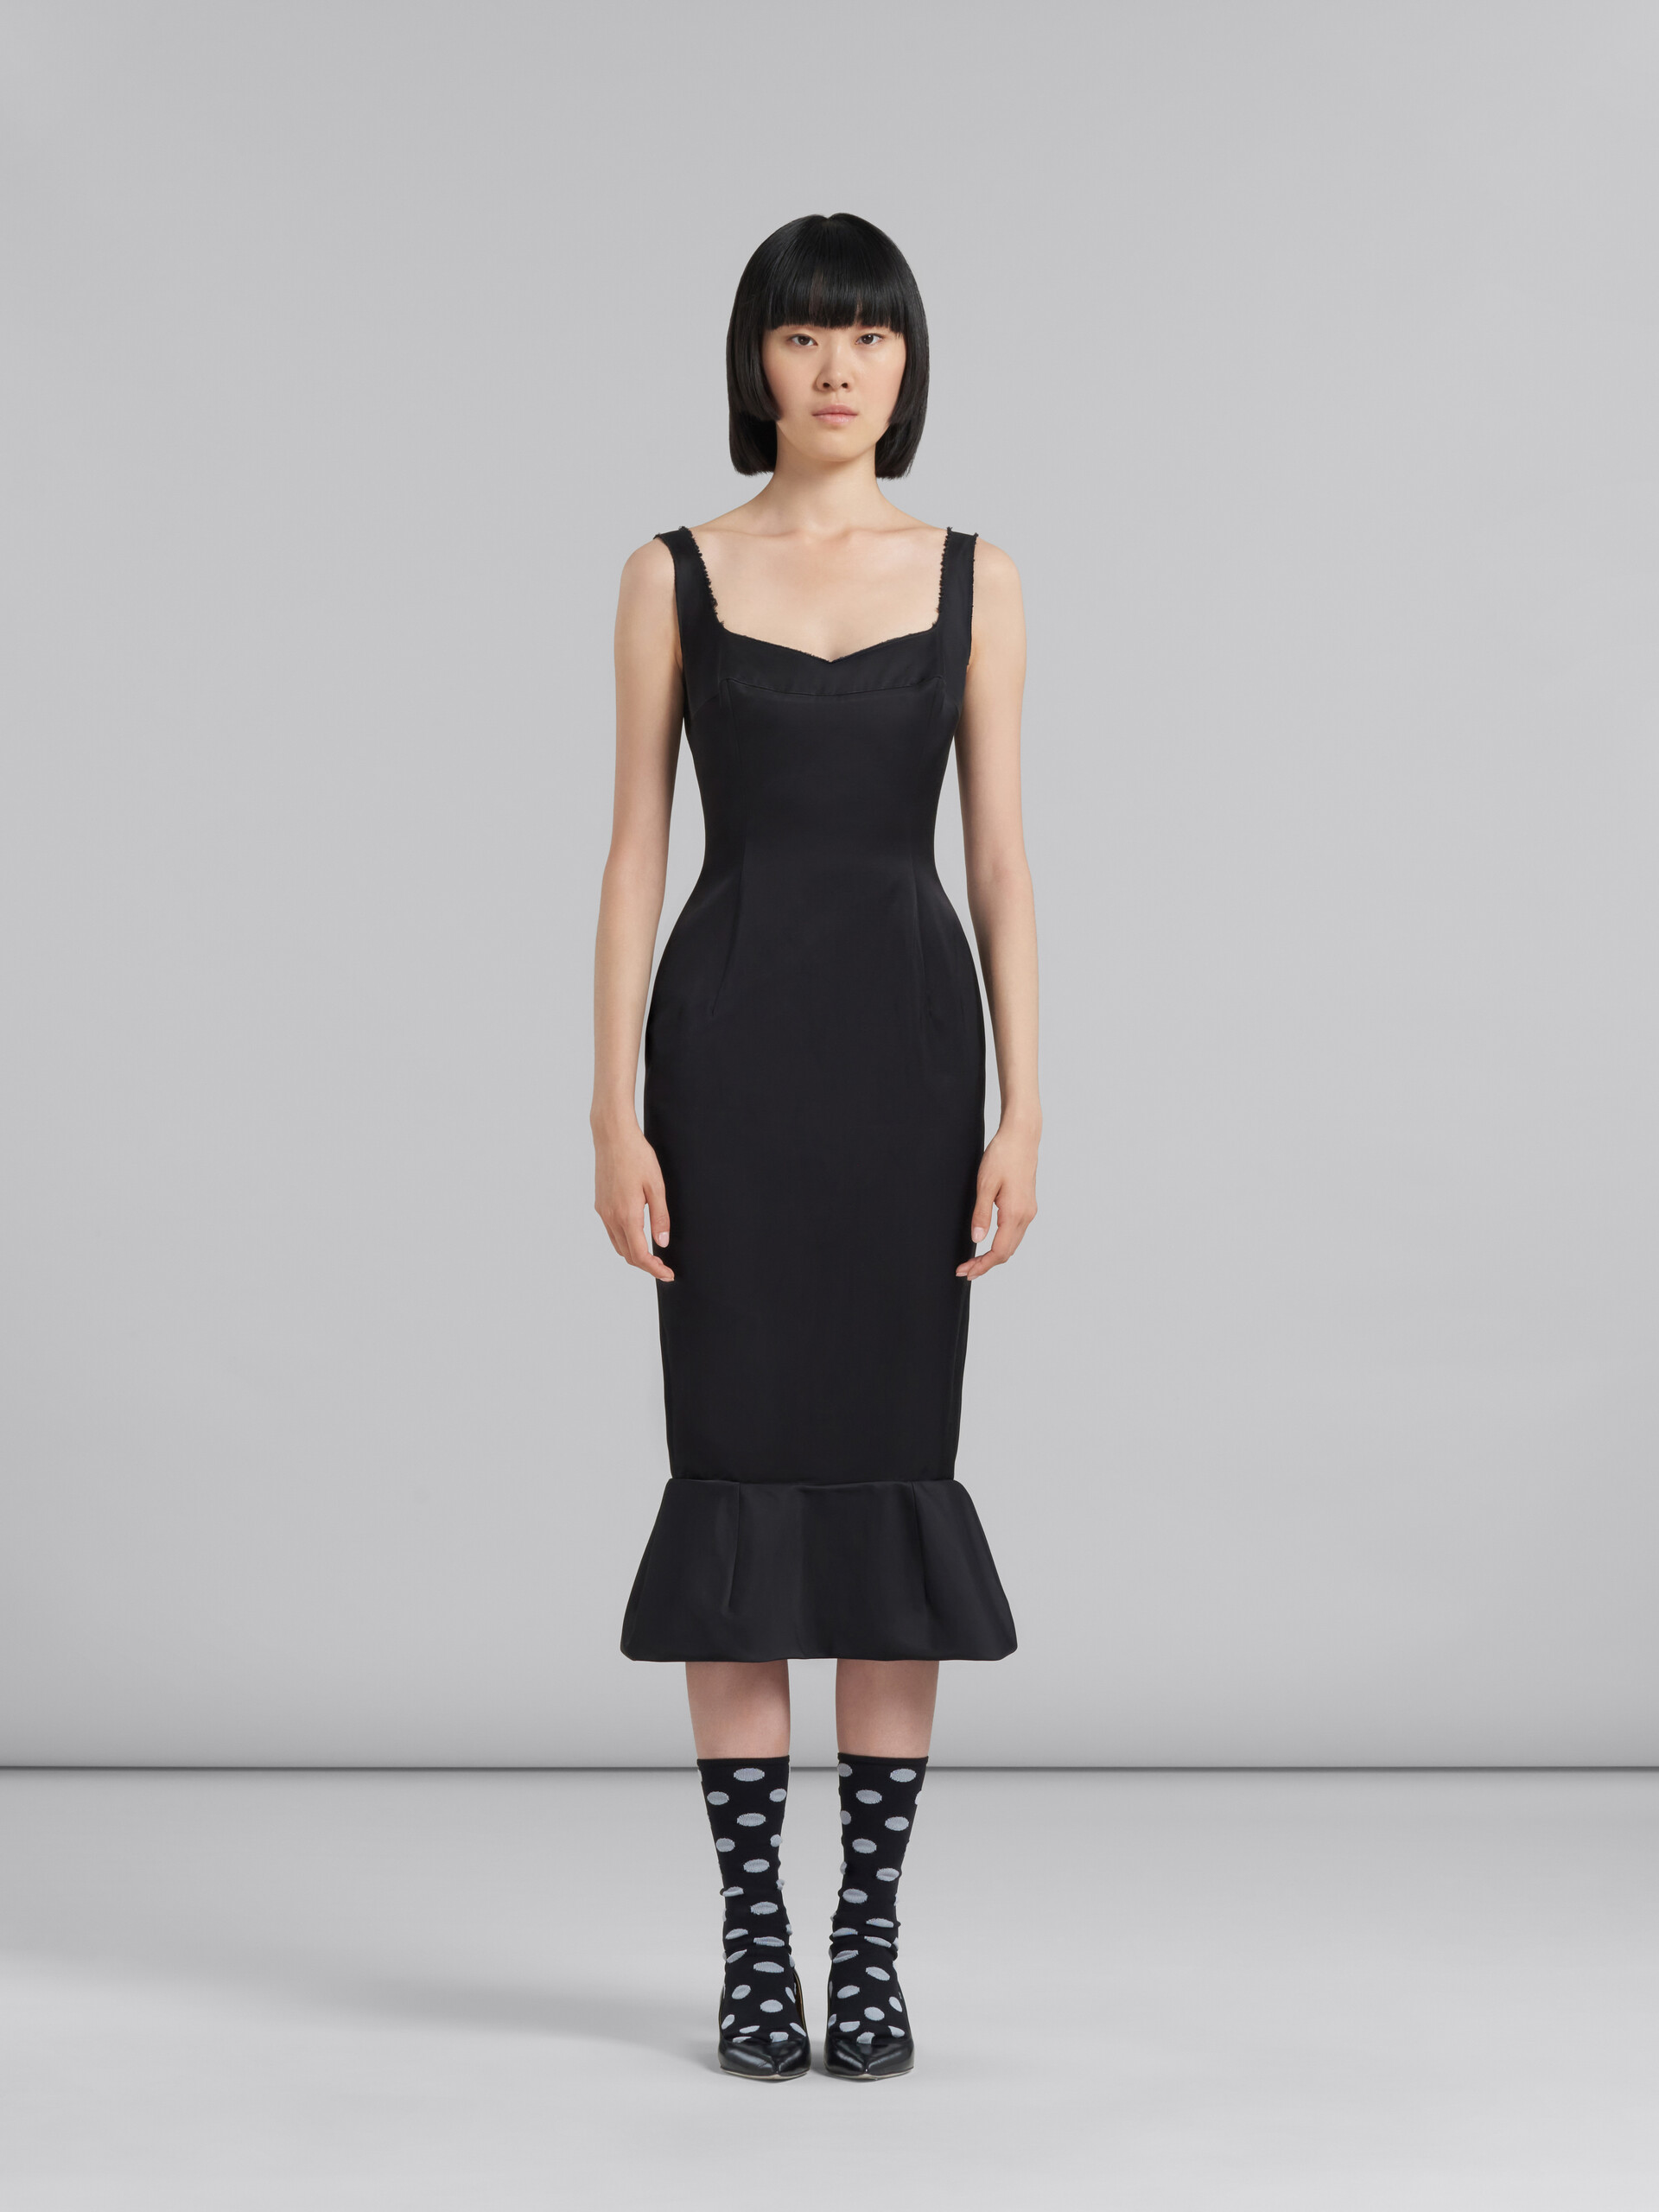 Black cady sheath dress with flounce hem - Dresses - Image 2